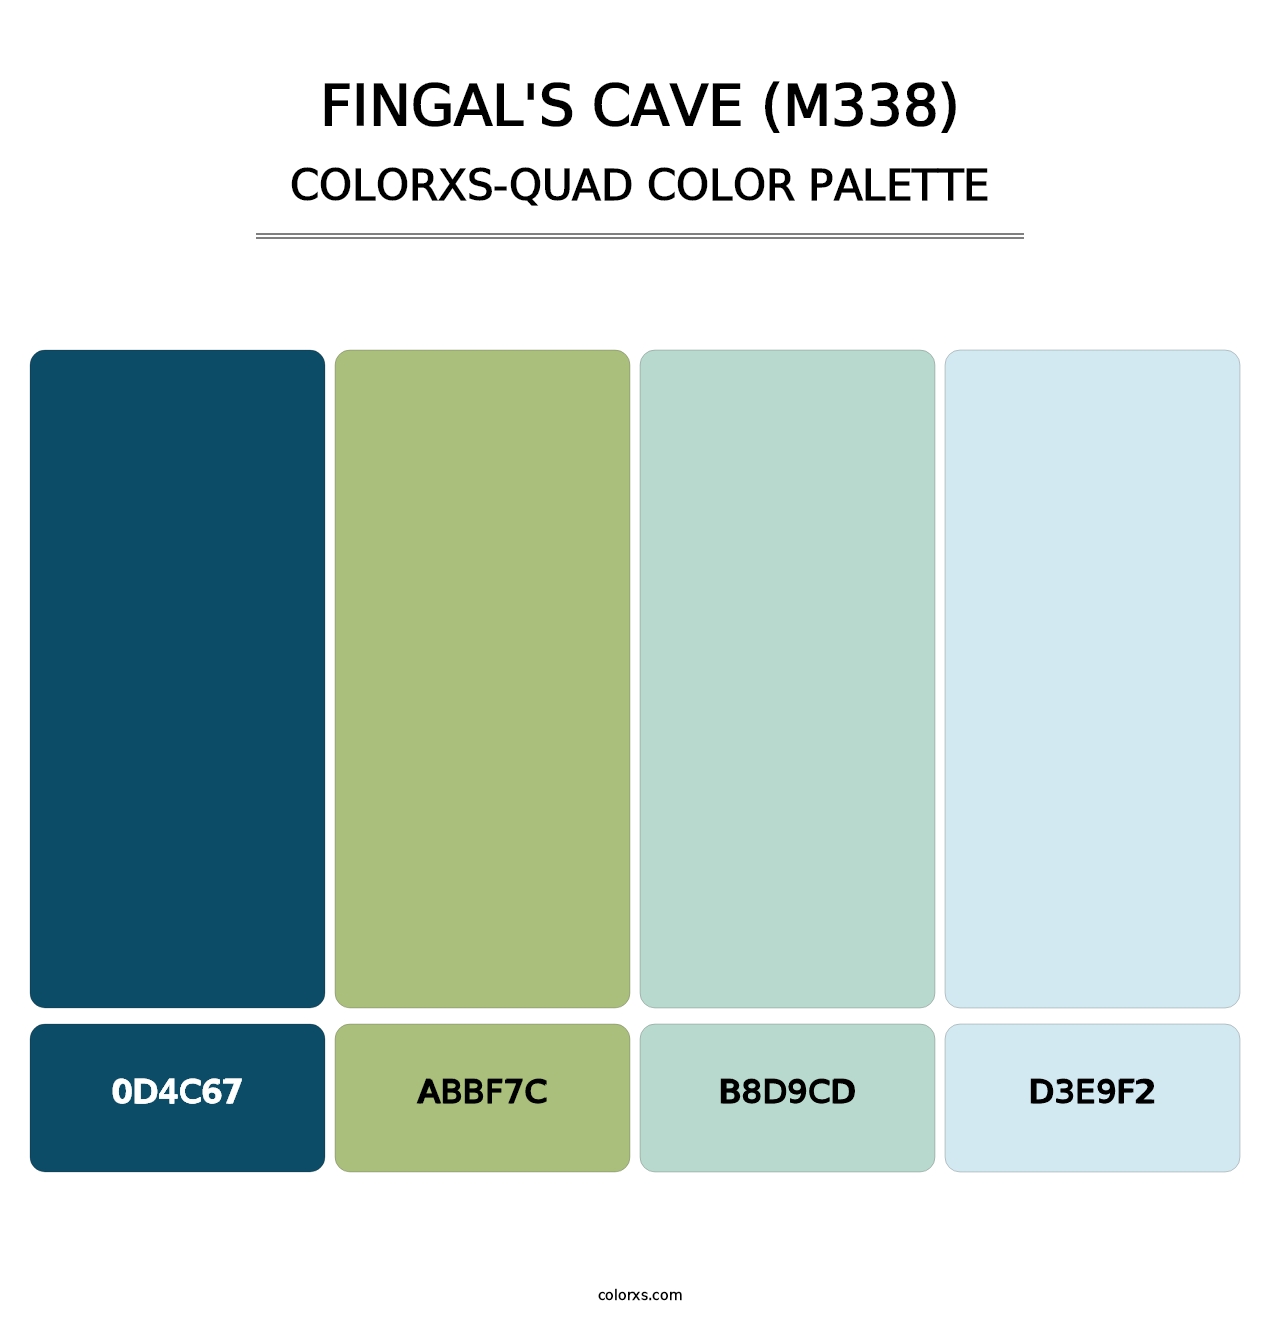 Fingal's Cave (M338) - Colorxs Quad Palette